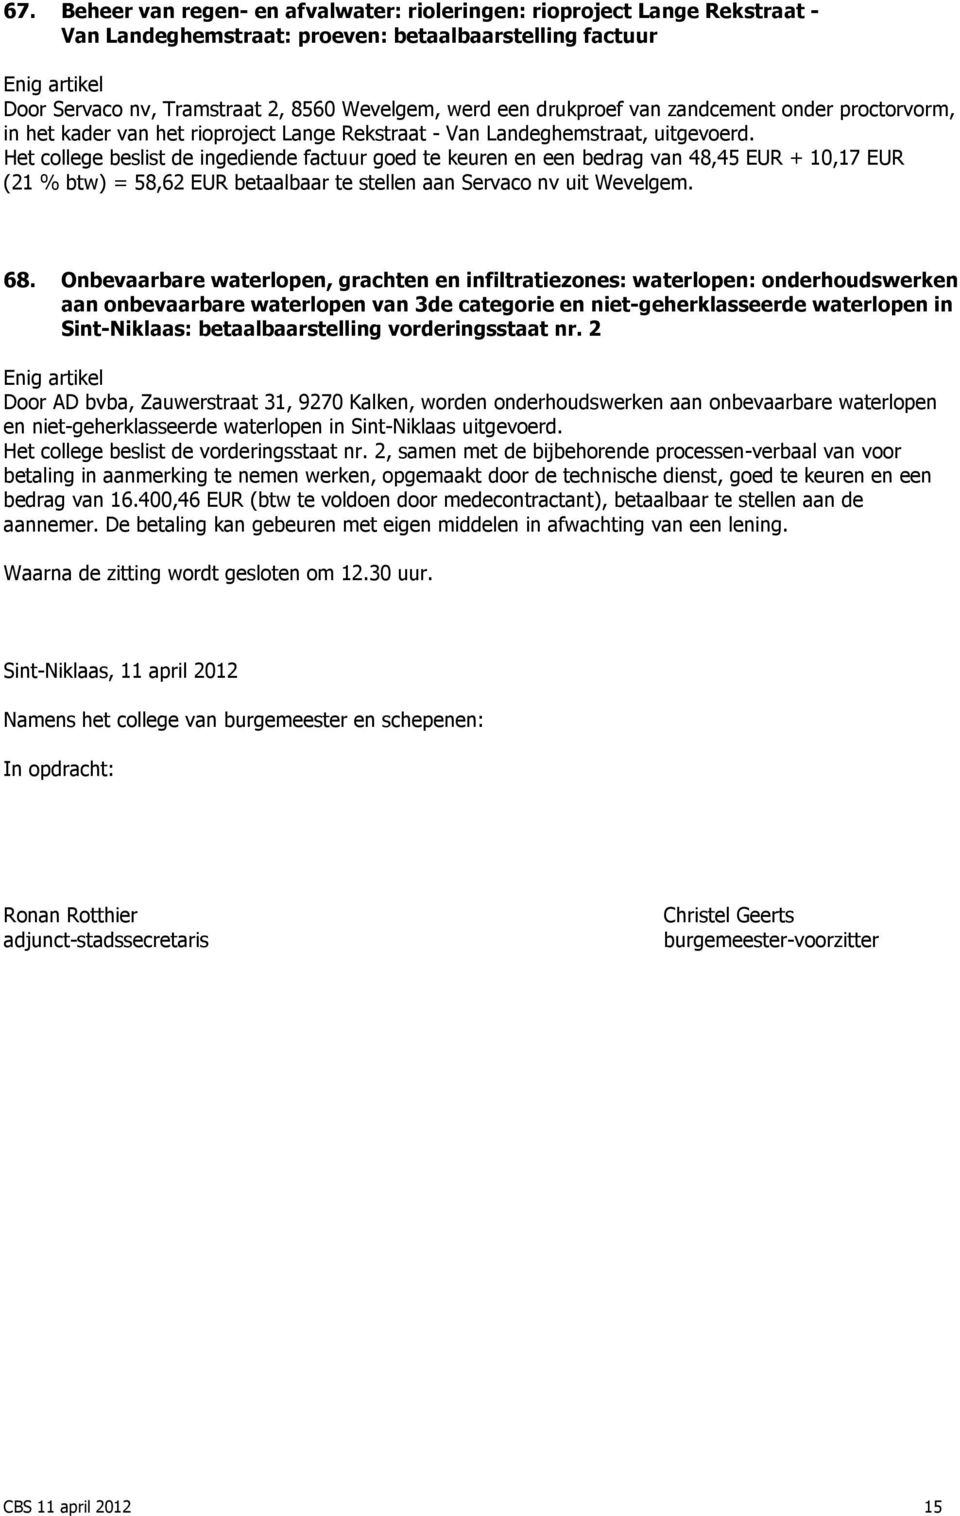 Het college beslist de ingediende factuur goed te keuren en een bedrag van 48,45 EUR + 10,17 EUR (21 % btw) = 58,62 EUR betaalbaar te stellen aan Servaco nv uit Wevelgem. 68.